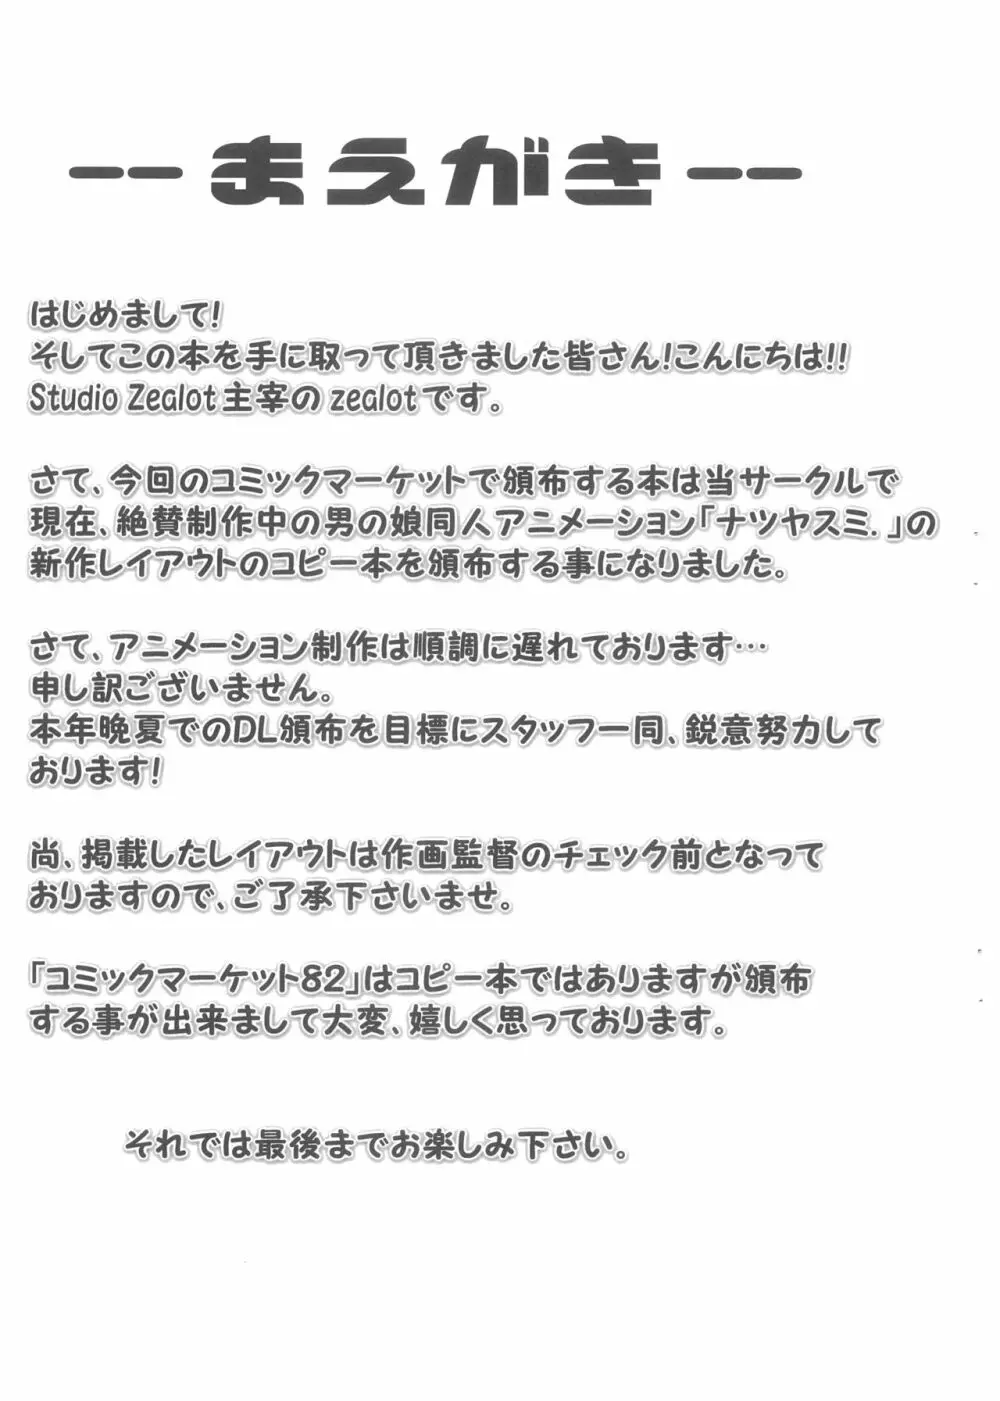 「ナツヤスミ.」 レイアウト集 12 Aug. 2012 Ver. - page4